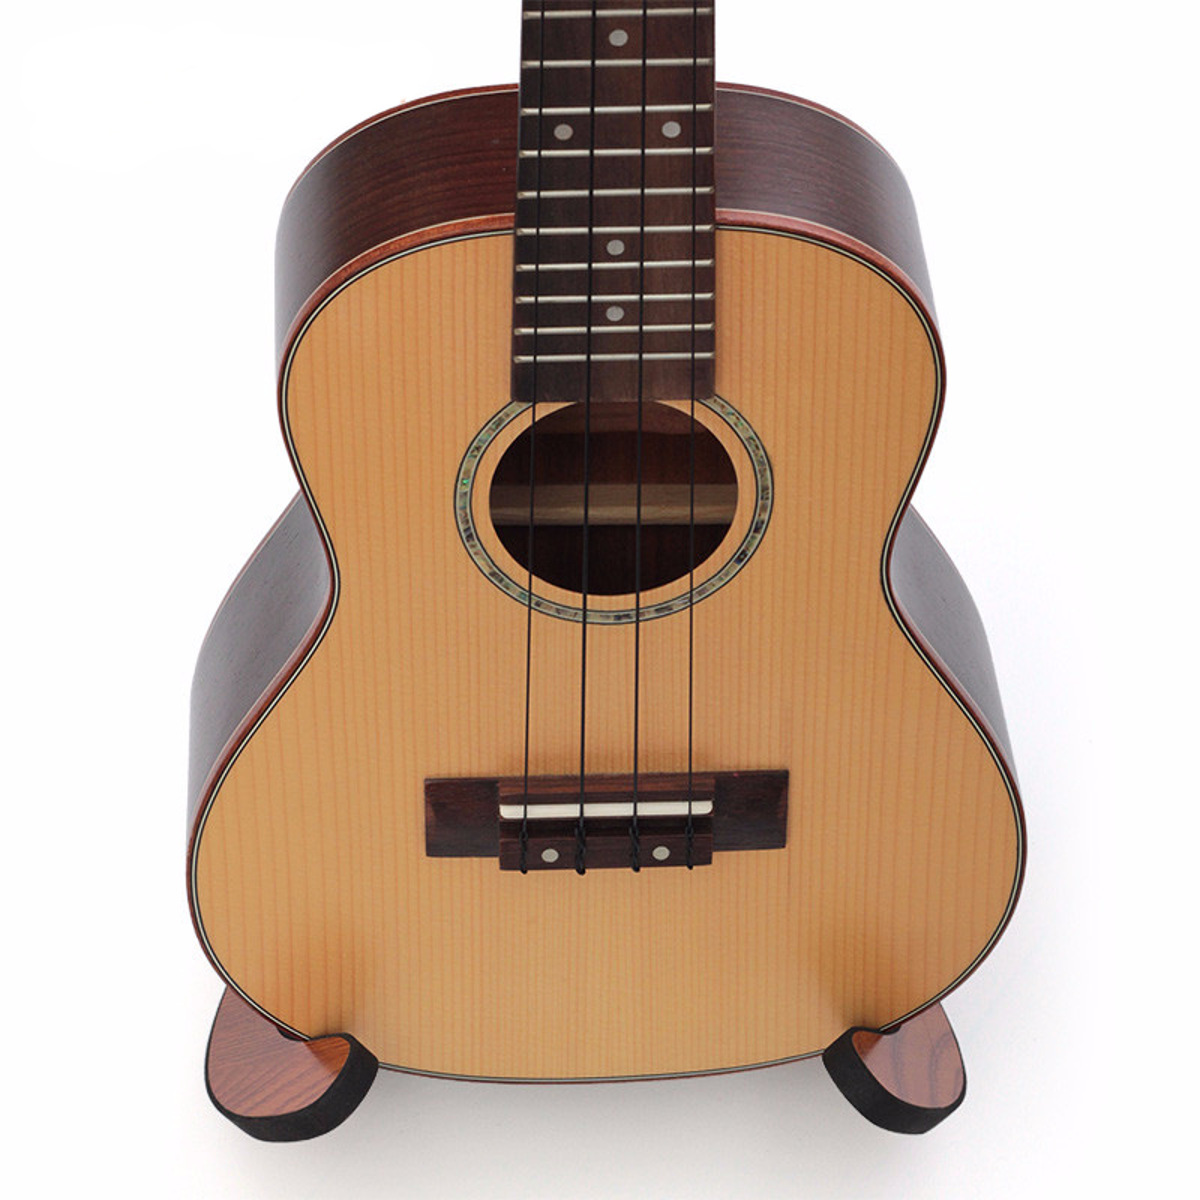 Multifunctional-Wooden-Guitar-Ukulele-Tablet-Holder-Desktop-Bracket-Stand-1876166-9